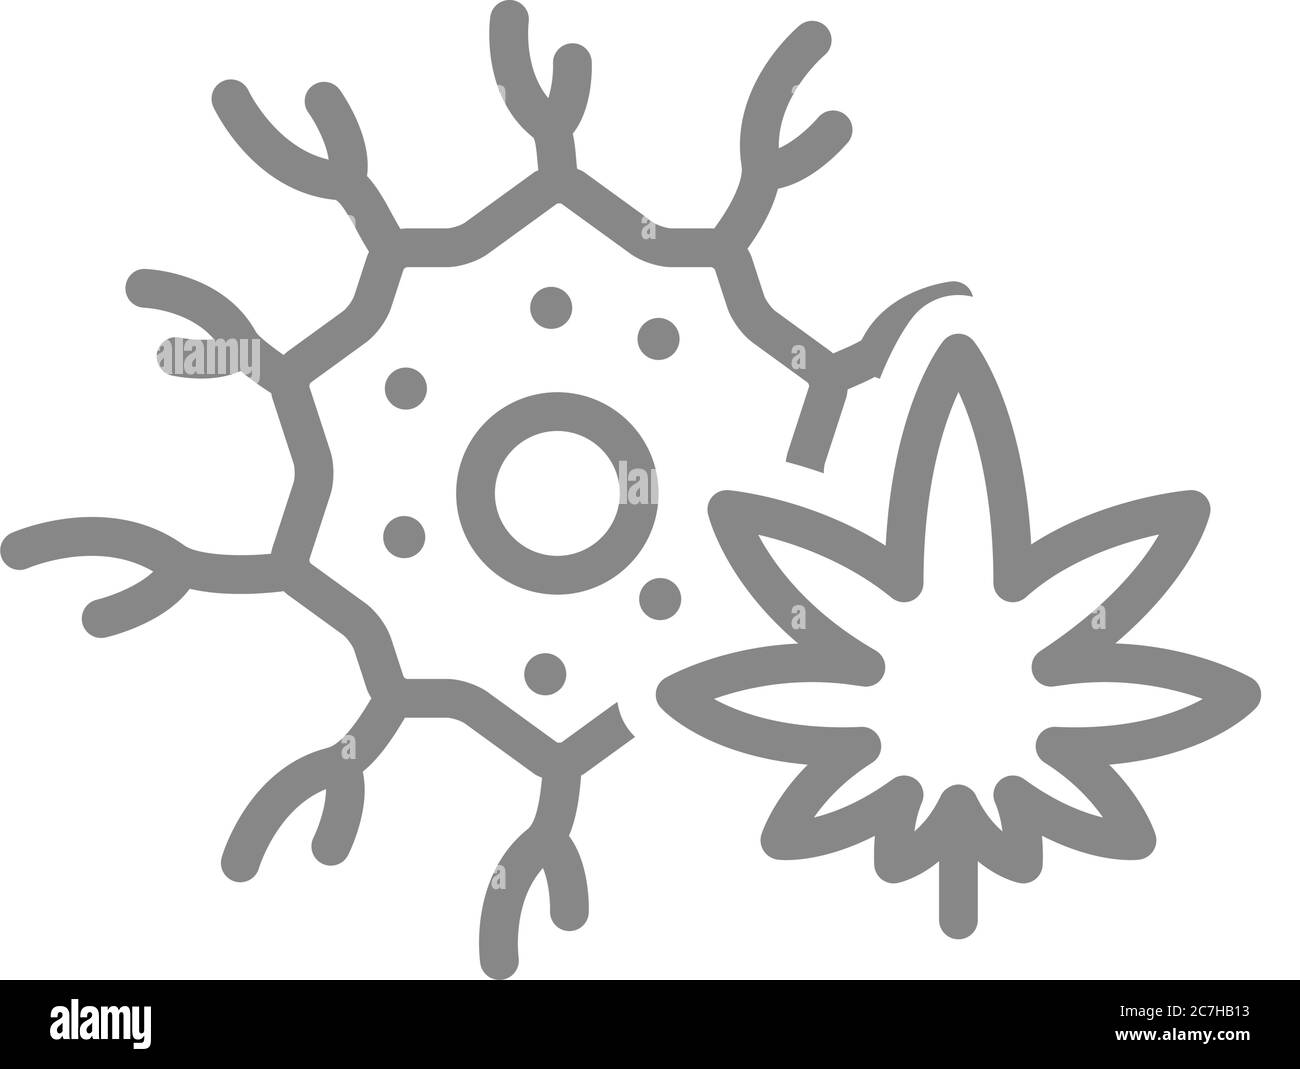 Nervenzelle mit Marihuana-Blatt-Symbol. Cannabisbehandlung, Anästhesie-Symbol Stock Vektor